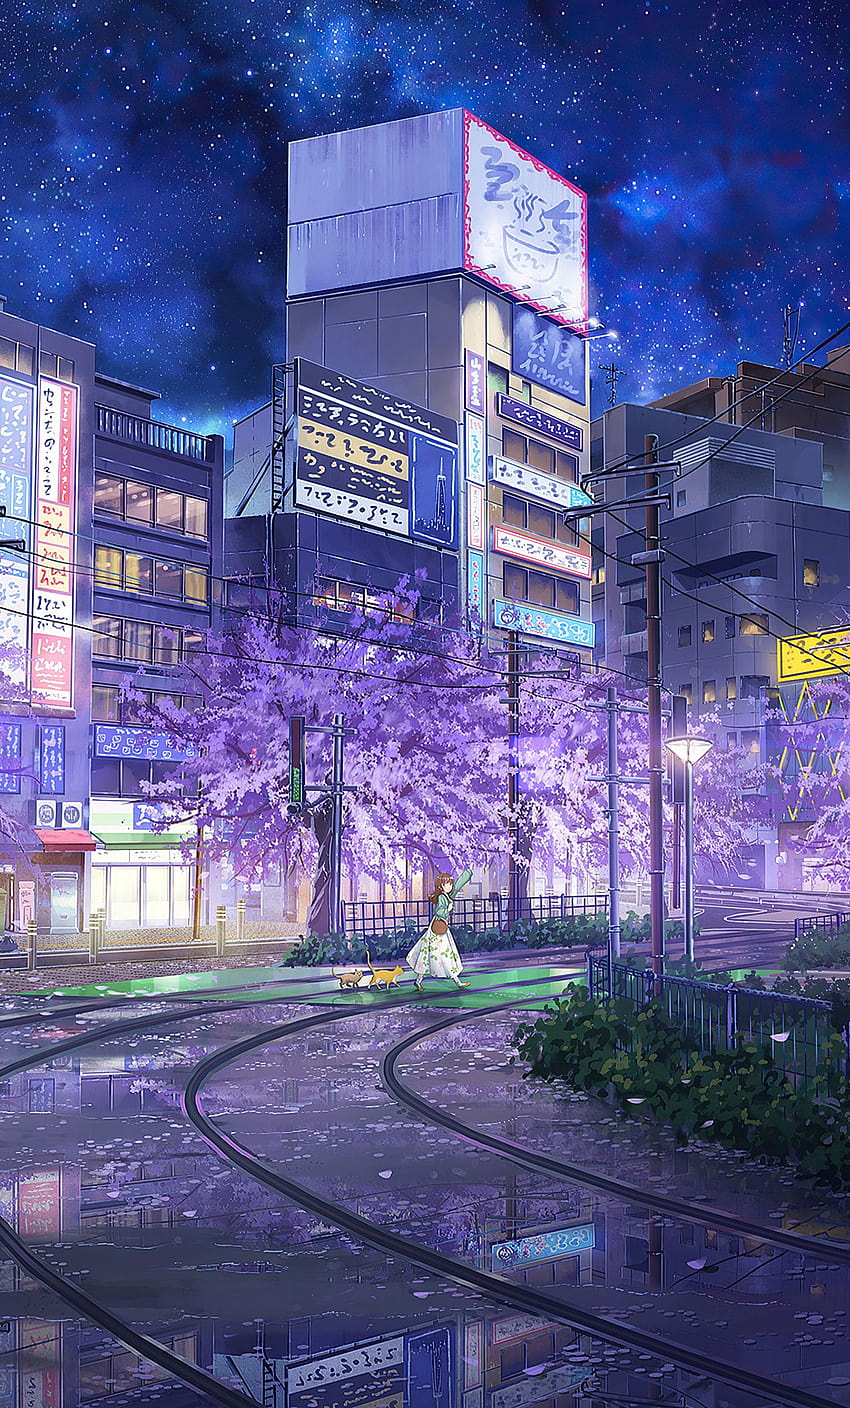 Cute Anime Backgrounds HD Free download  PixelsTalkNet